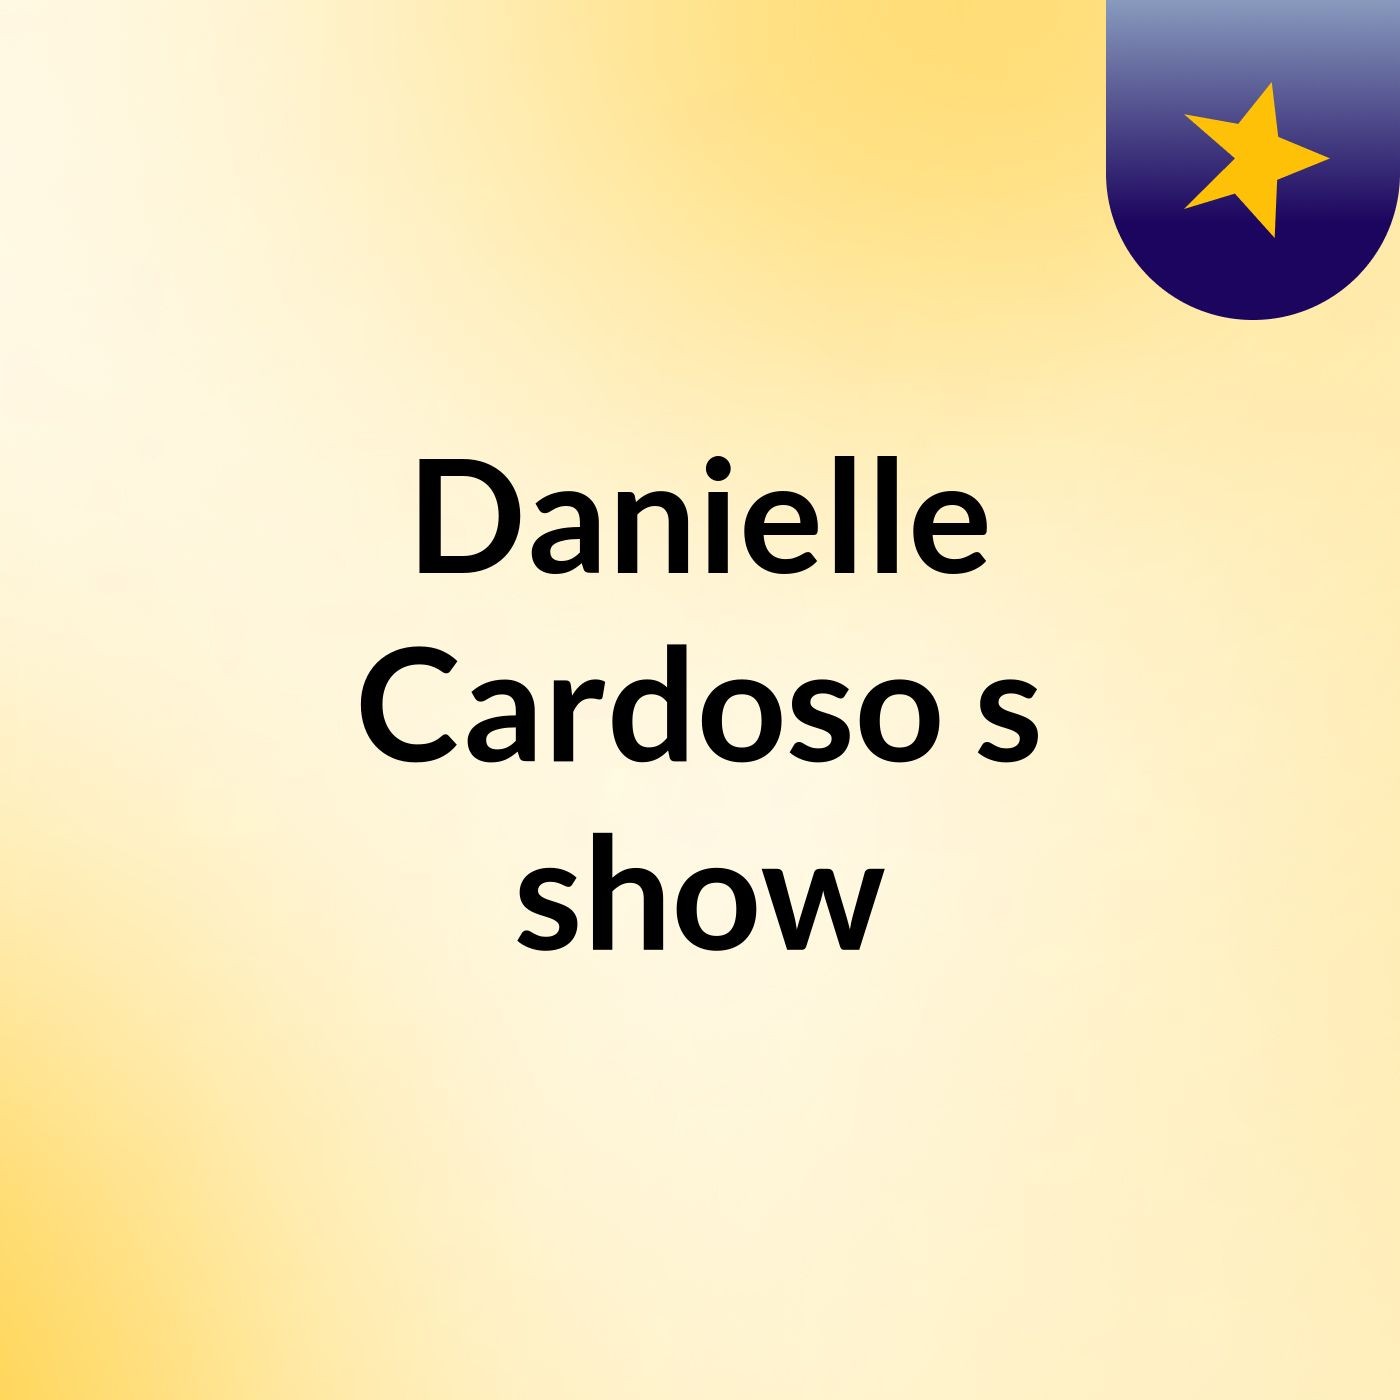 Danielle Cardoso's show